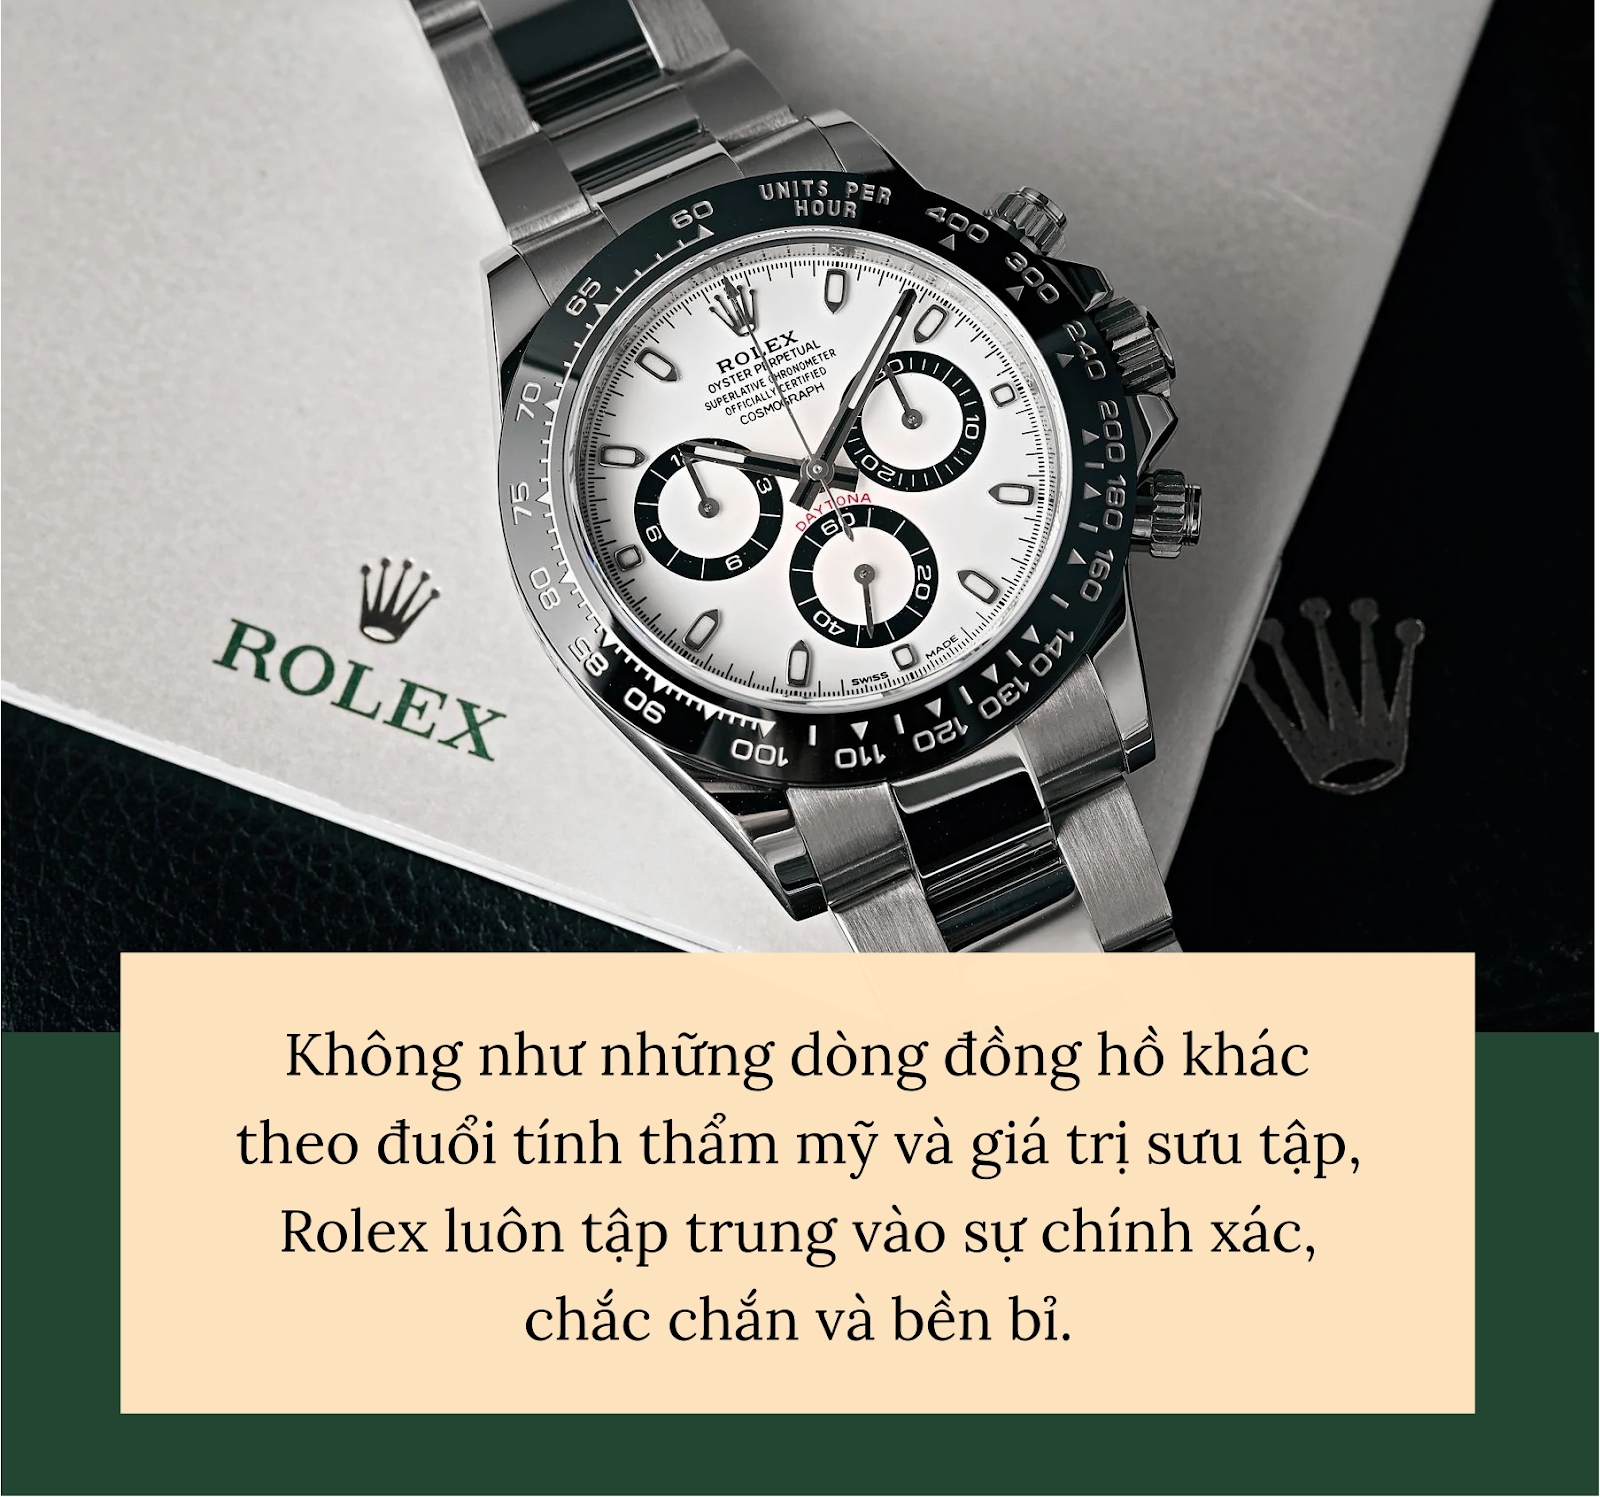 Vì sao Rolex được mặc định là đồng hồ của người thành công? Hóa ra 1 người đàn ông quyền lực đã đeo từ rất sớm - Ảnh 1.